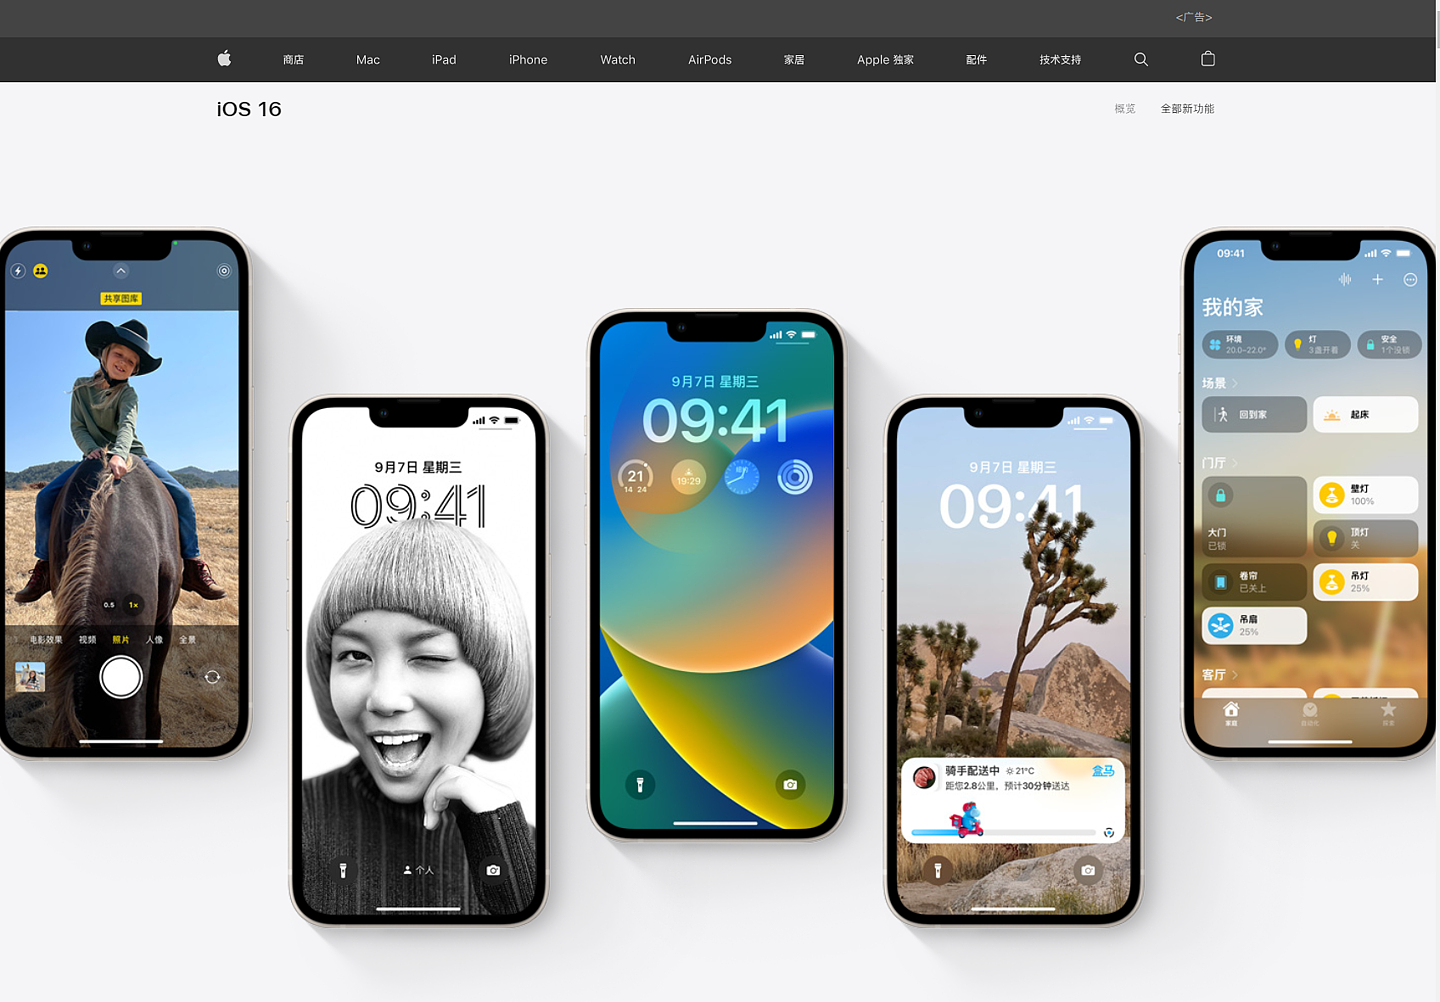 发布 100 天后，苹果 iPhone 手机的 iOS 16 升级 / 安装率已近 70% - 1